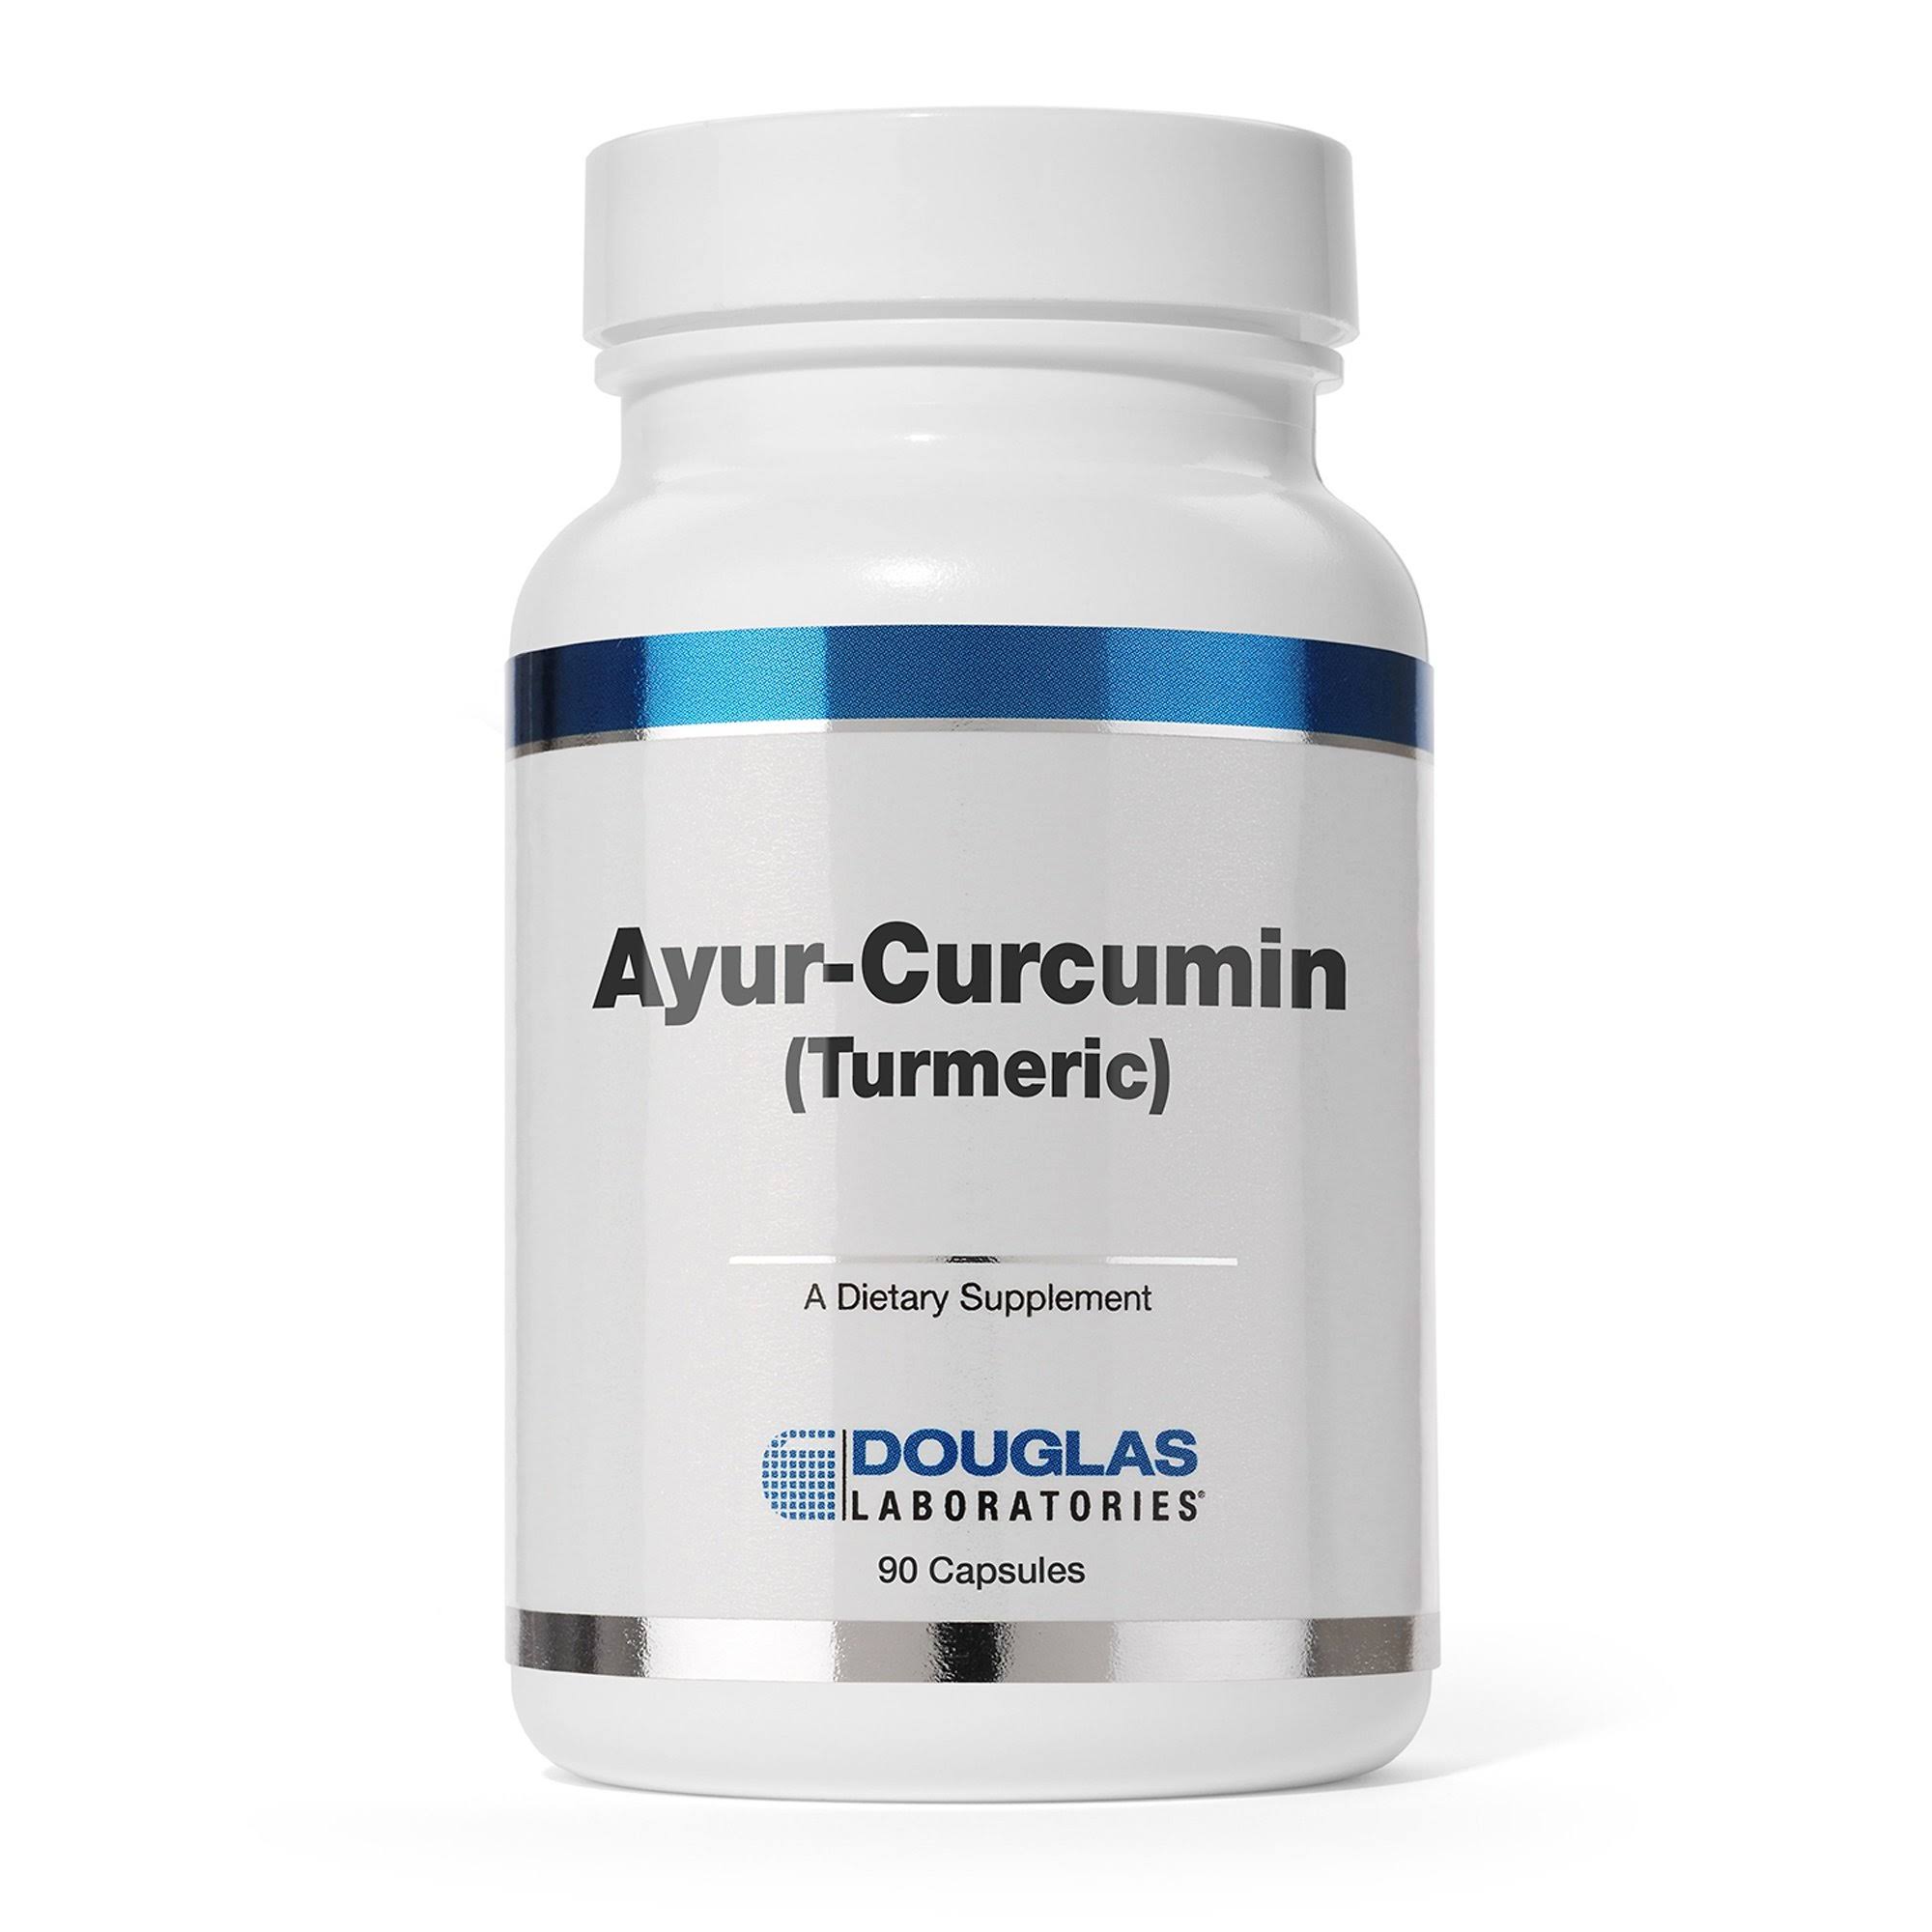 Douglas Laboratories Ayurcurcumin Dietary Supplement - 90 Capsules